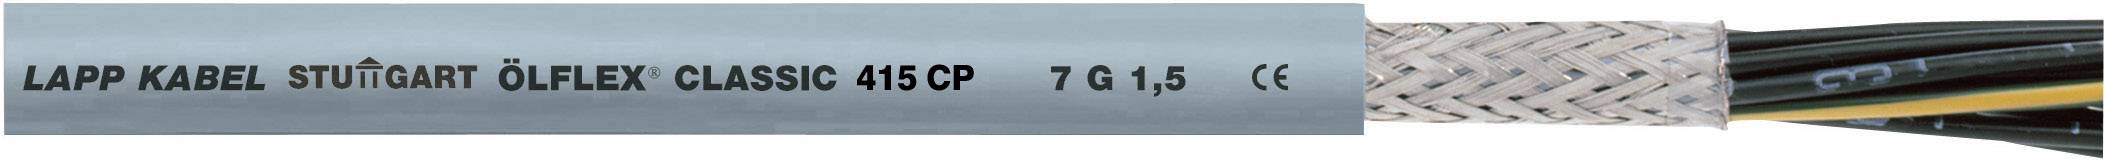 LAPP ÖLFLEX 415 CP Steuerleitung 18 G 0.50 mm² Grau 1314012-1000 1000 m